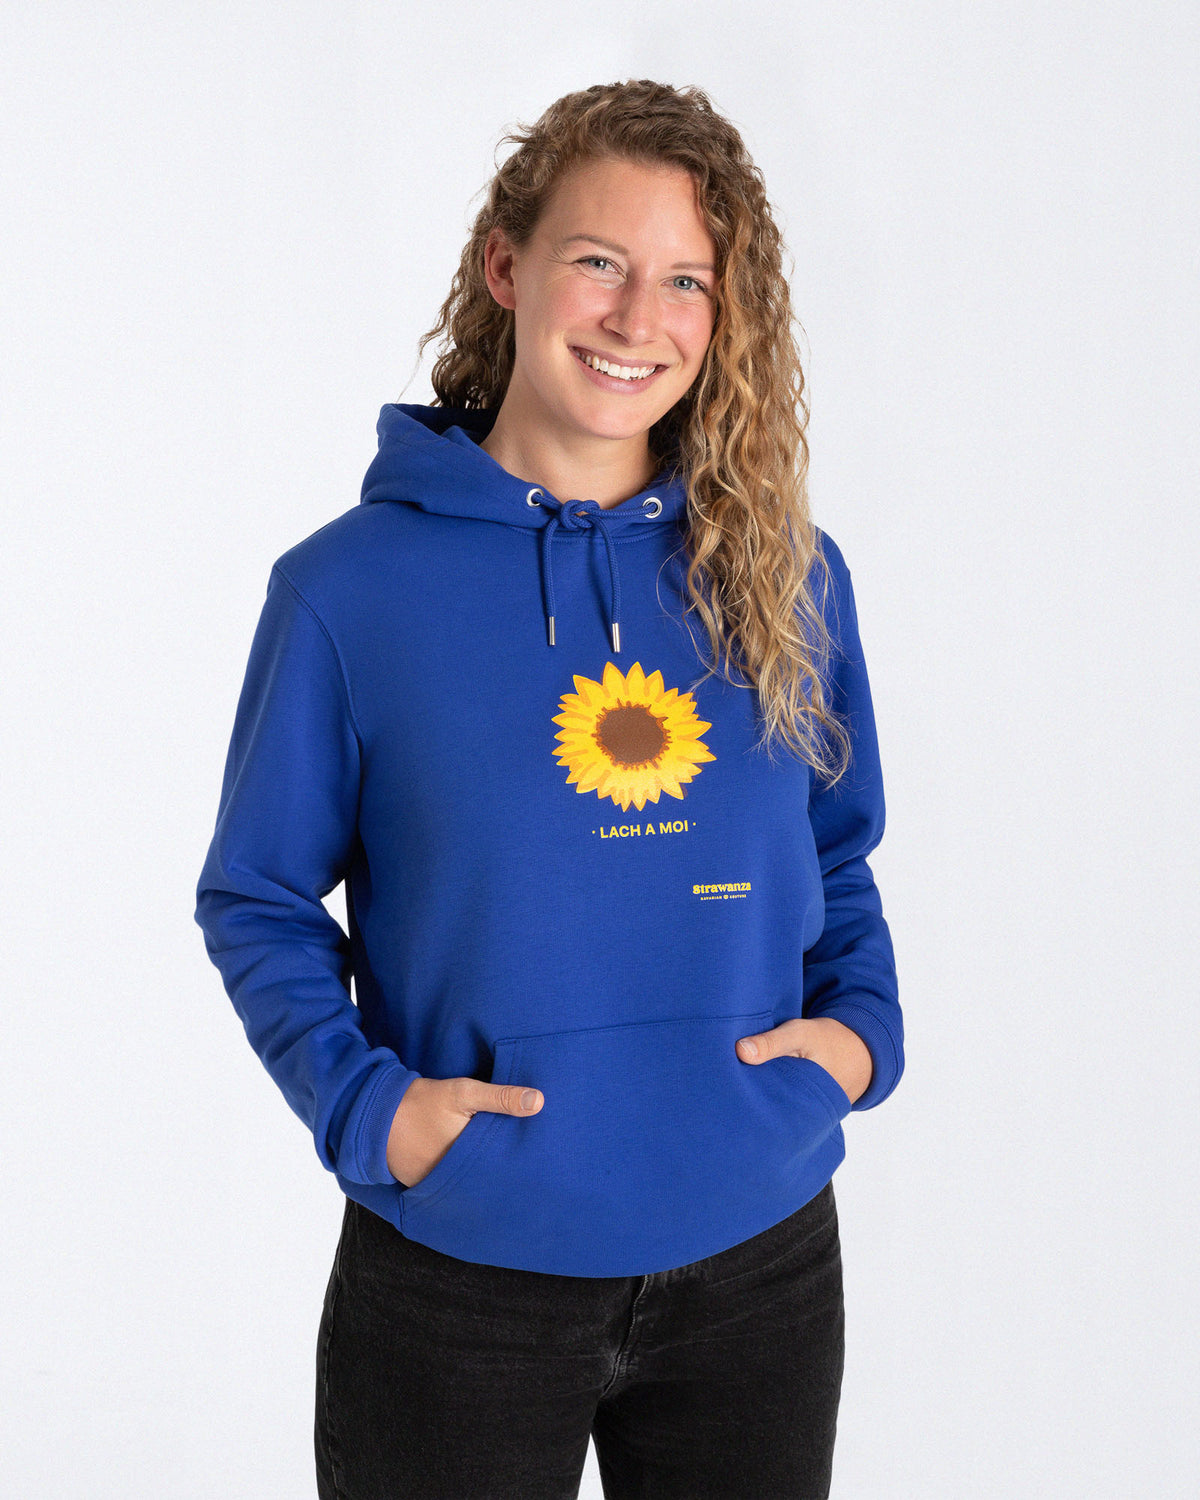 Ein weibliches Model trägt einen blauen Hoodie mit einem Motiv, dass aus einer Sonnenblume und einem gelben "LACH A MOI" Schriftzug besteht, welches auf der Höhe der Brust platziert ist.